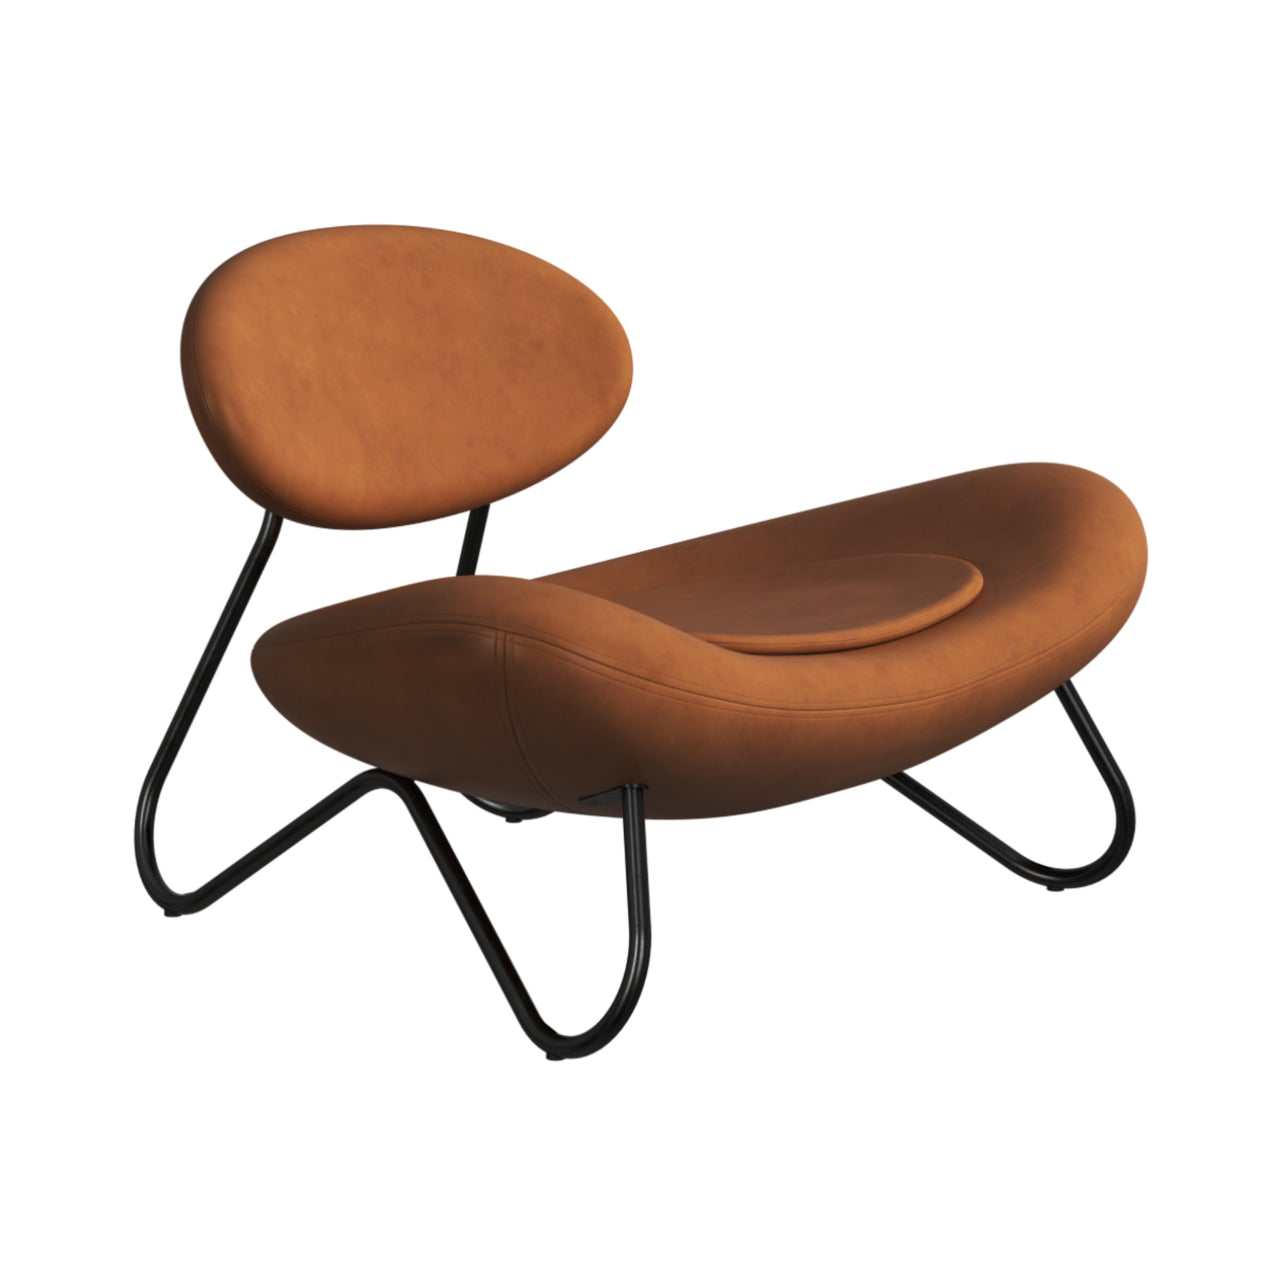 Meadow Lounge Chair: Black Painted Steel